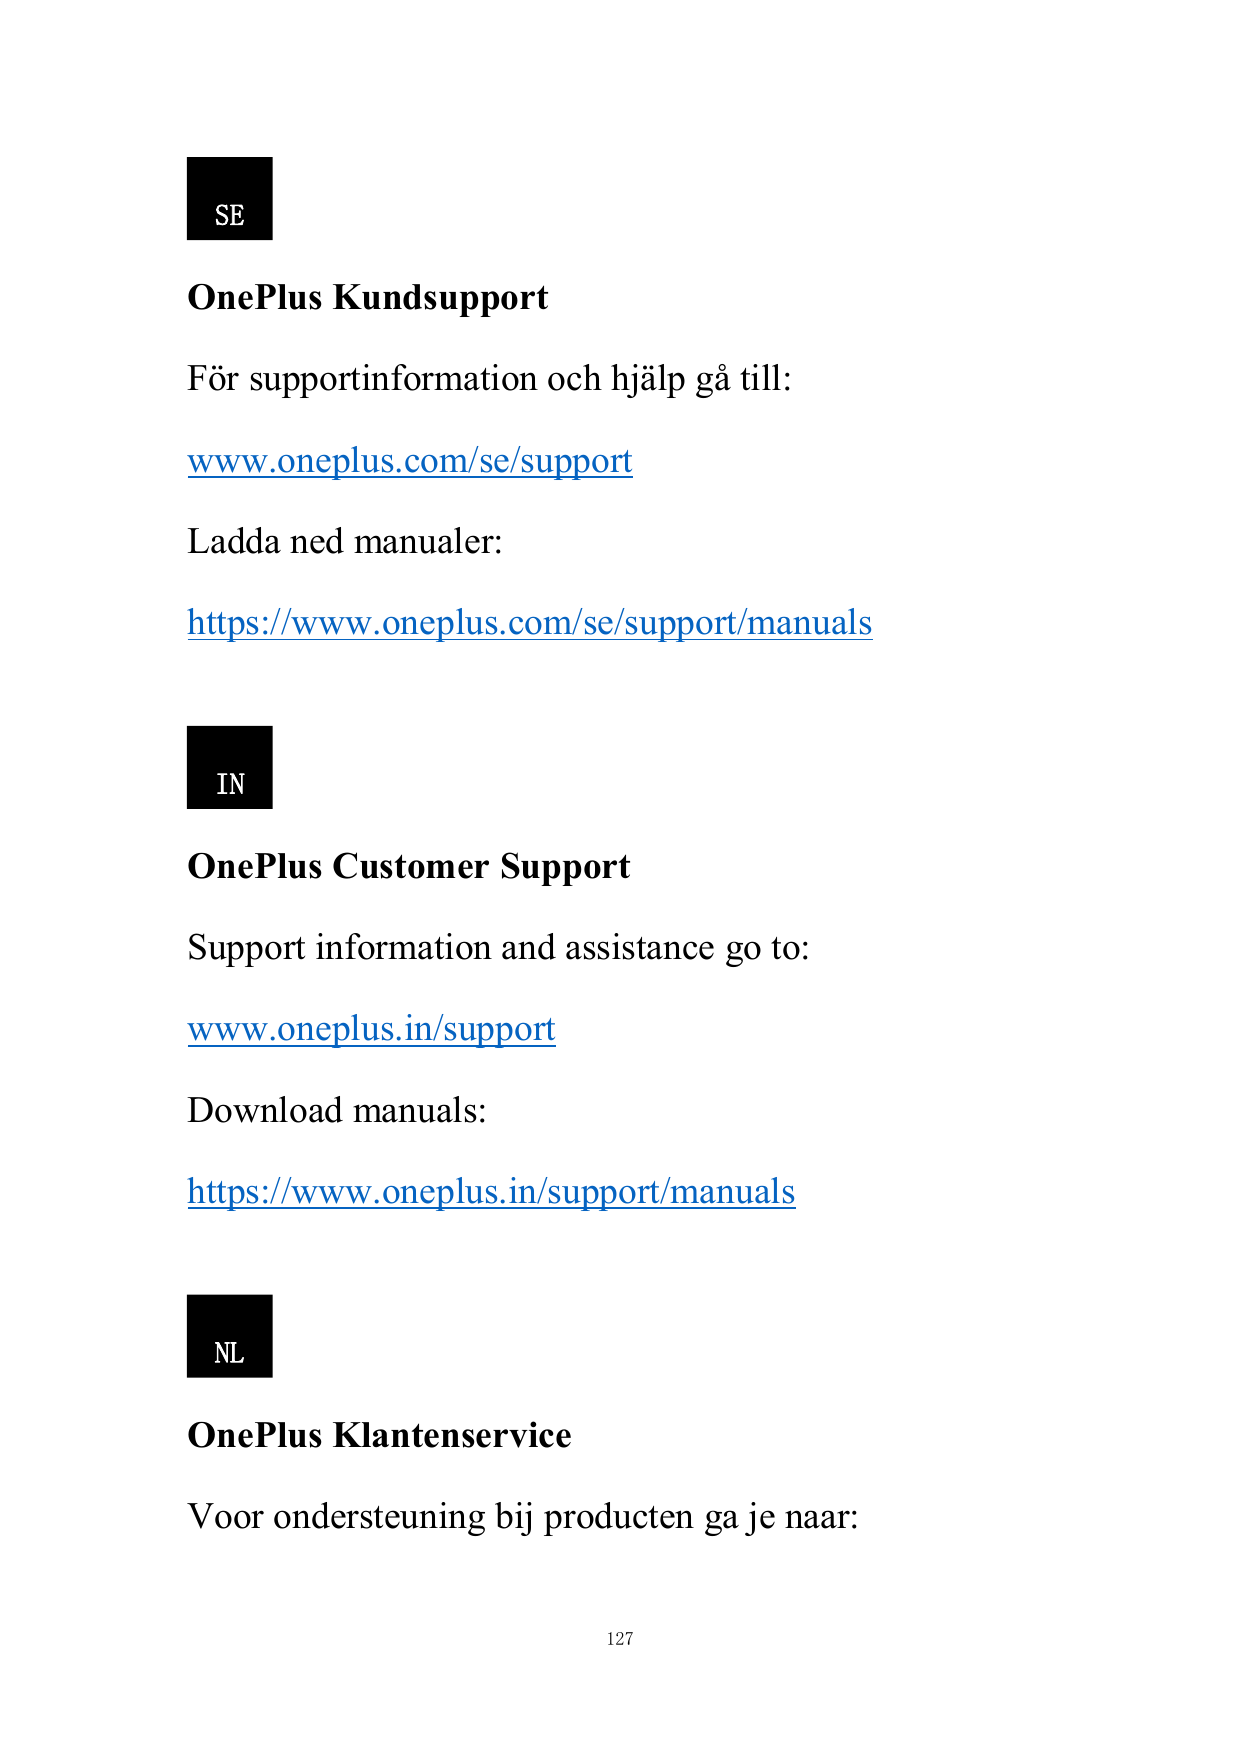 SEOnePlus KundsupportFör supportinformation och hjälp gå till:www.oneplus.com/se/supportLadda ned manualer:https://www.oneplus.c